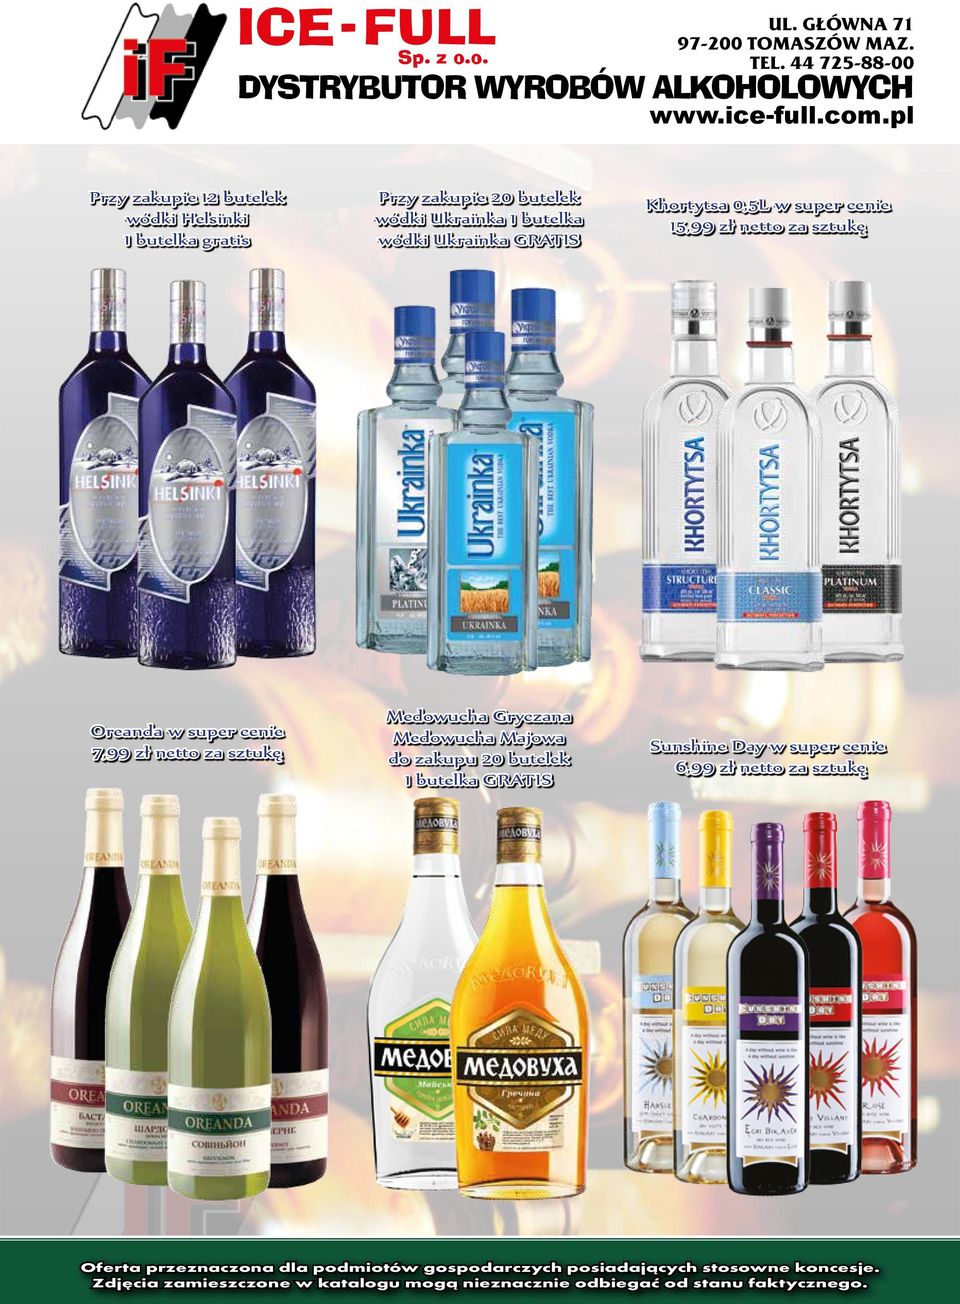 Ukrainka 1 butelka wódki Ukrainka GRATIS Khortytsa 0,5L 15,99 zł netto za sztukę Oreanda 7,99 zł netto za sztukę Medowucha Gryczana Medowucha